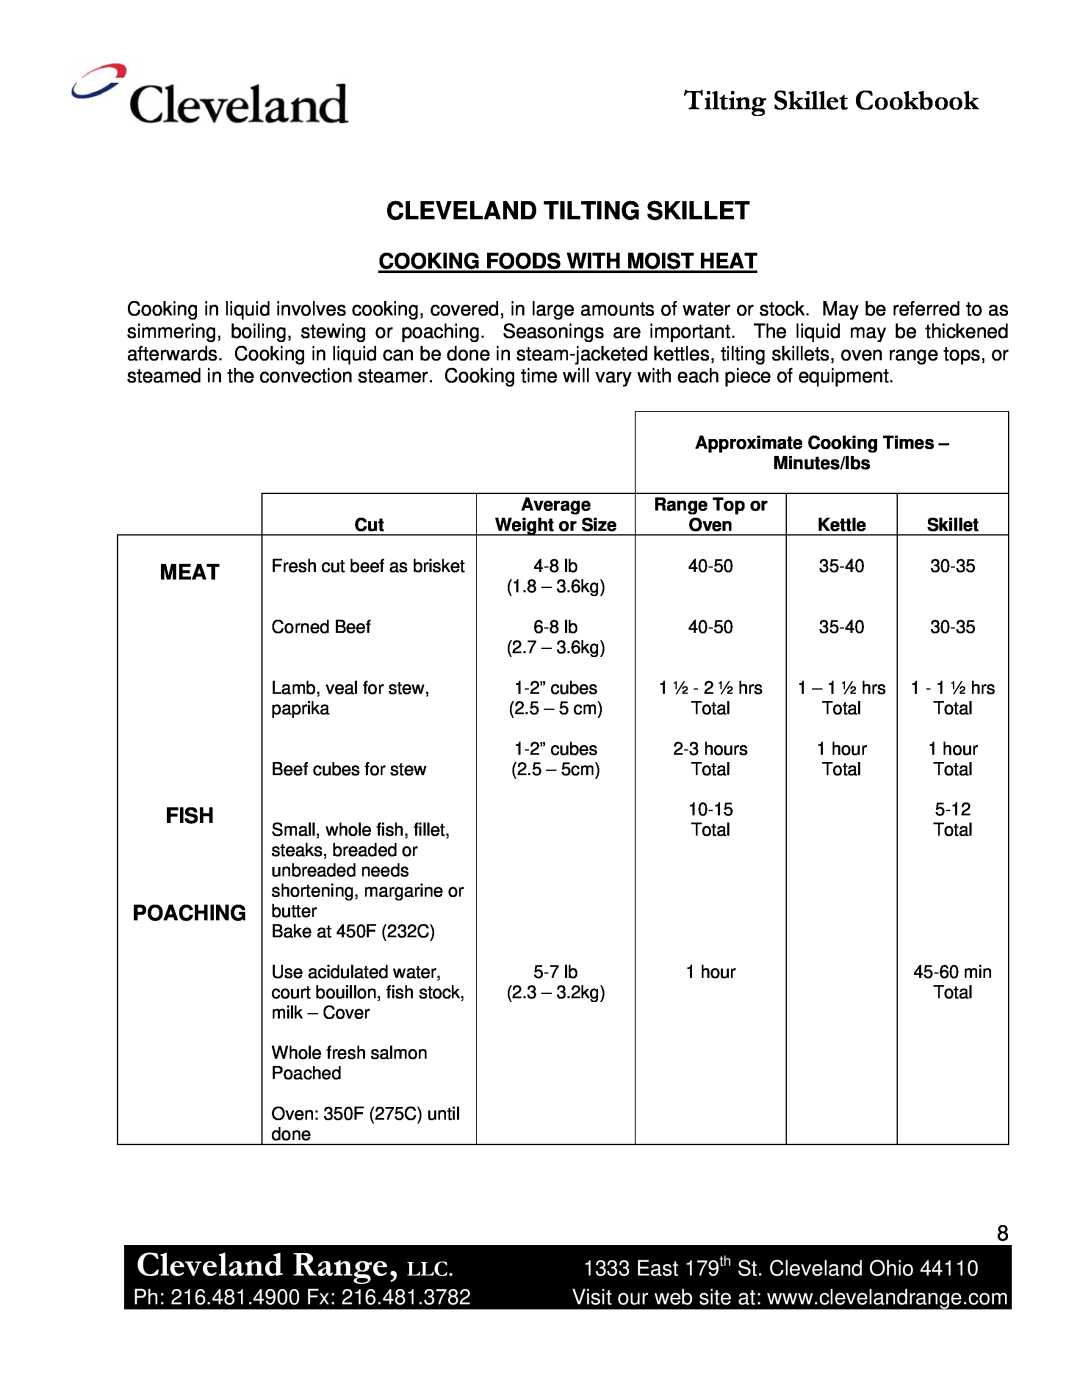 Cleveland Range Skillet/Braising Cleveland Range, LLC, Tilting Skillet Cookbook, Cleveland Tilting Skillet, Meat, Fish 